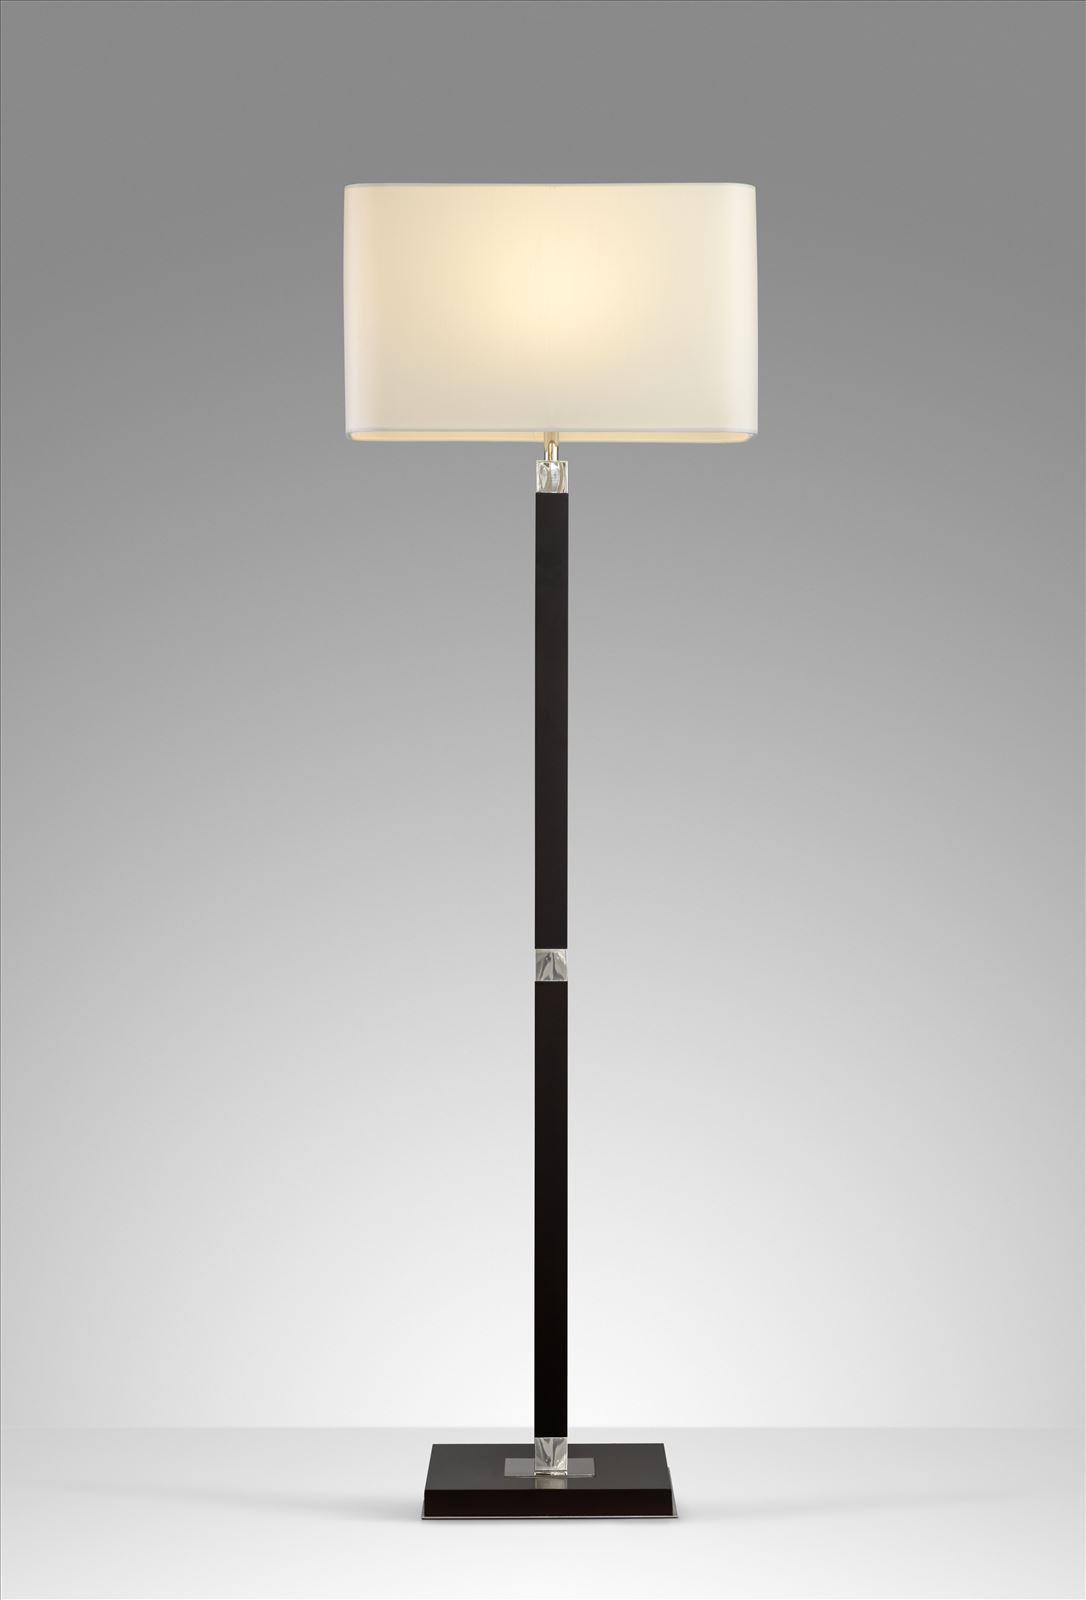 גופי תאורה מקטגוריית: מנורות עמידה  ,שם המוצר: גולדן אורנג'